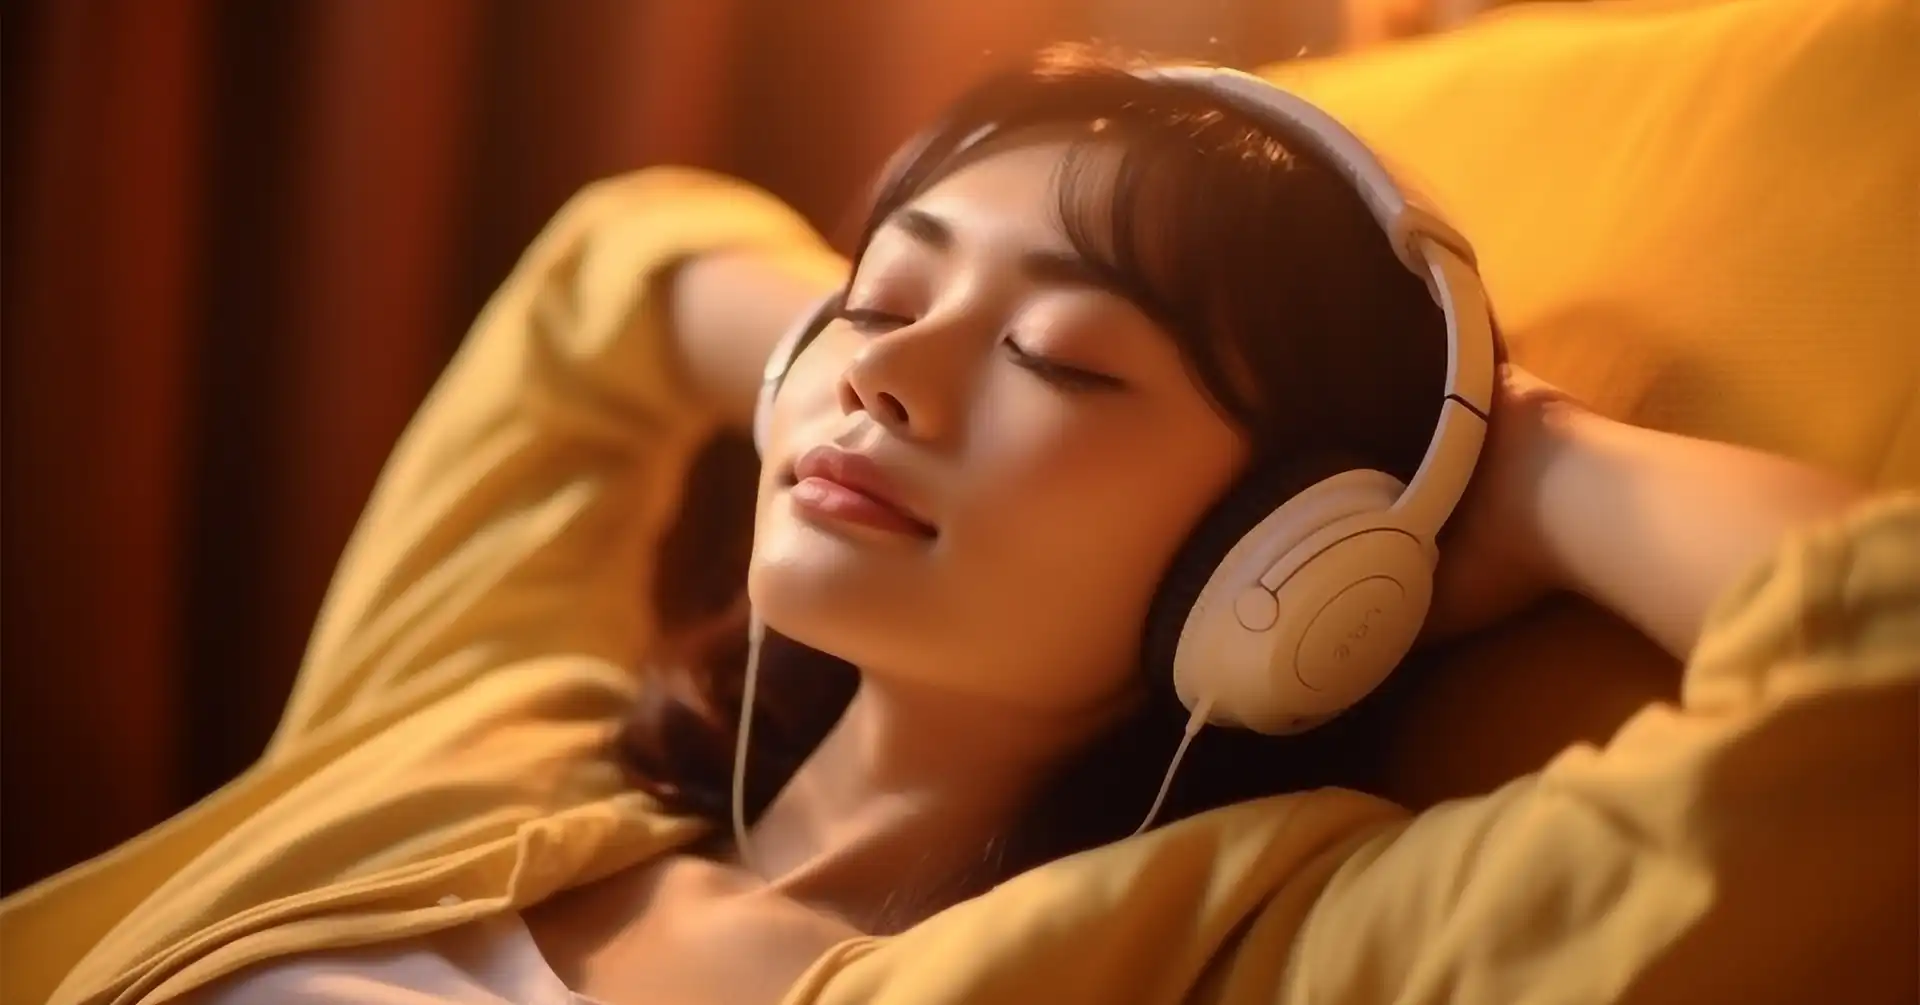 best headphones for sleeping